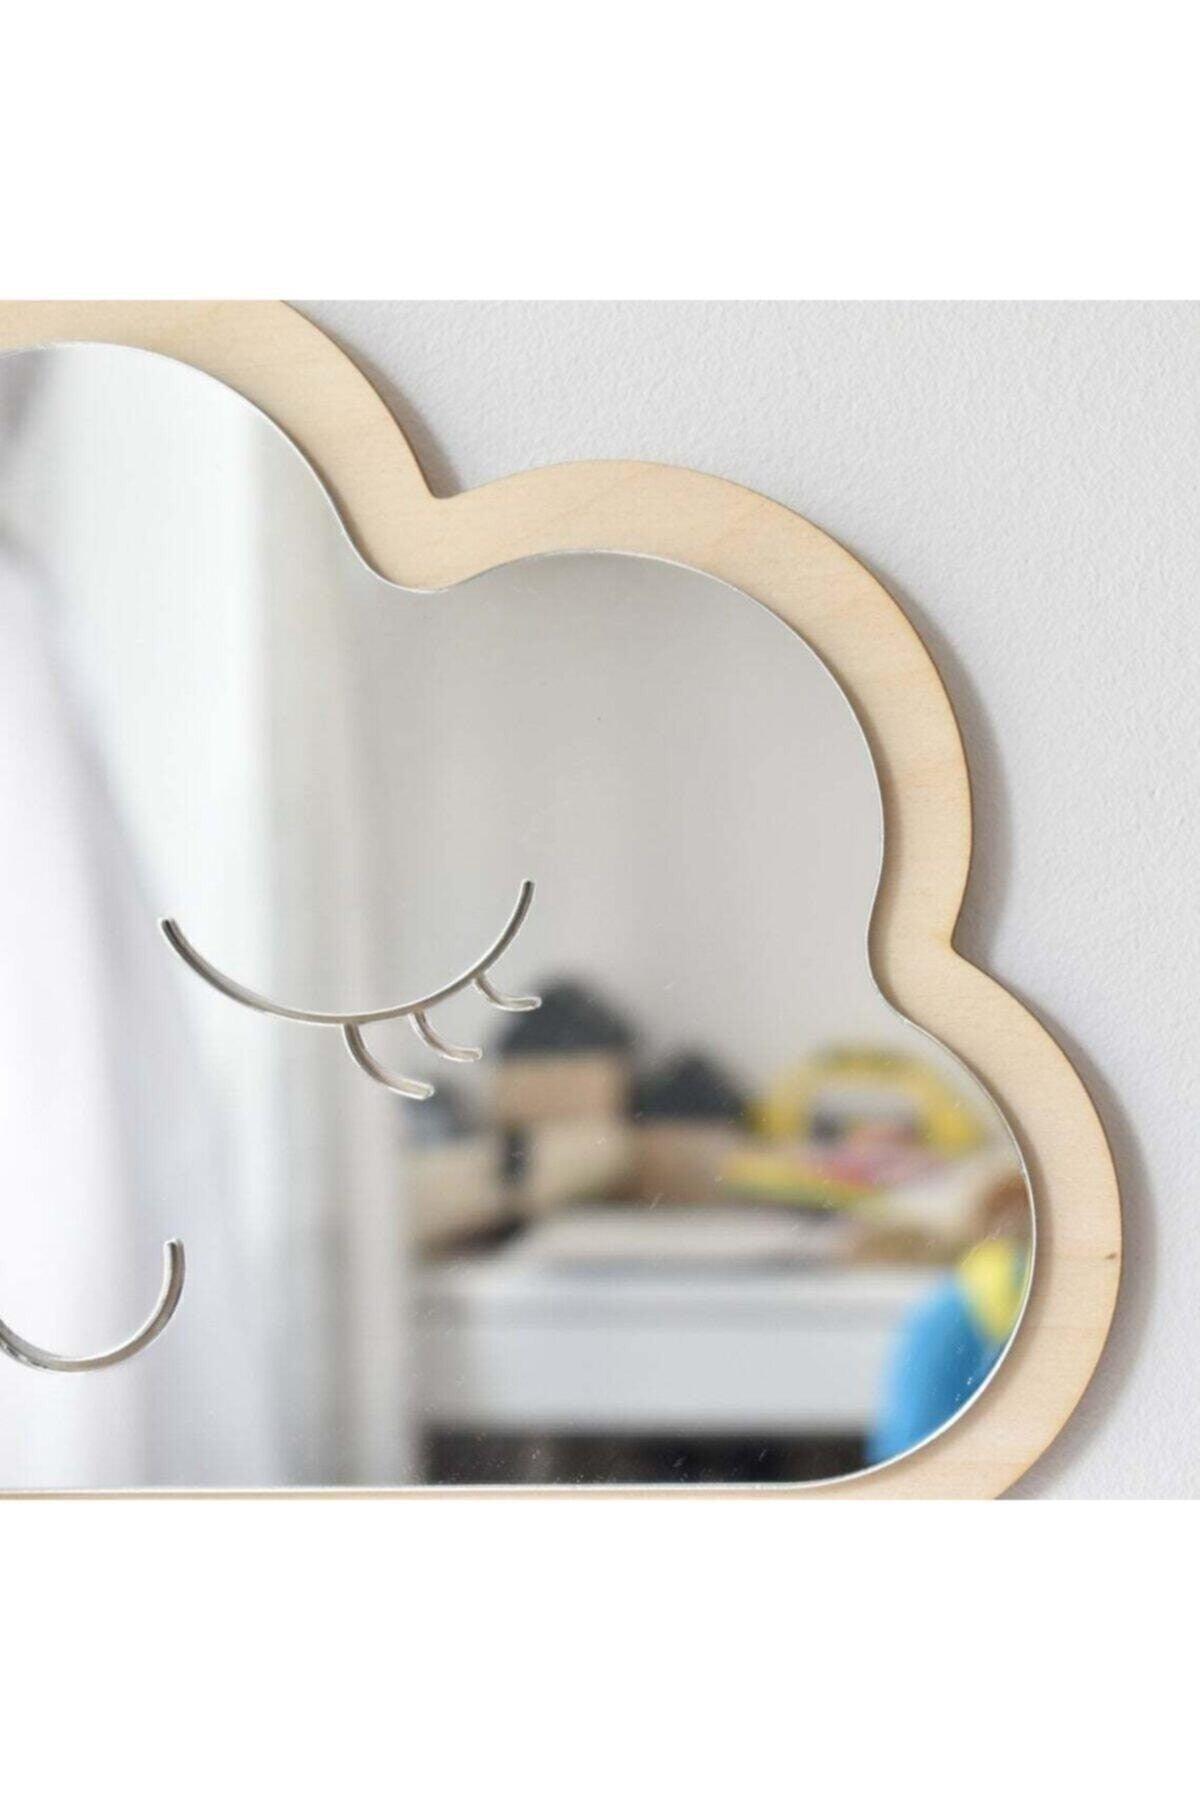 Cloud Mirror Kids Room Decor Unbreakable Wooden Ornament - Swordslife